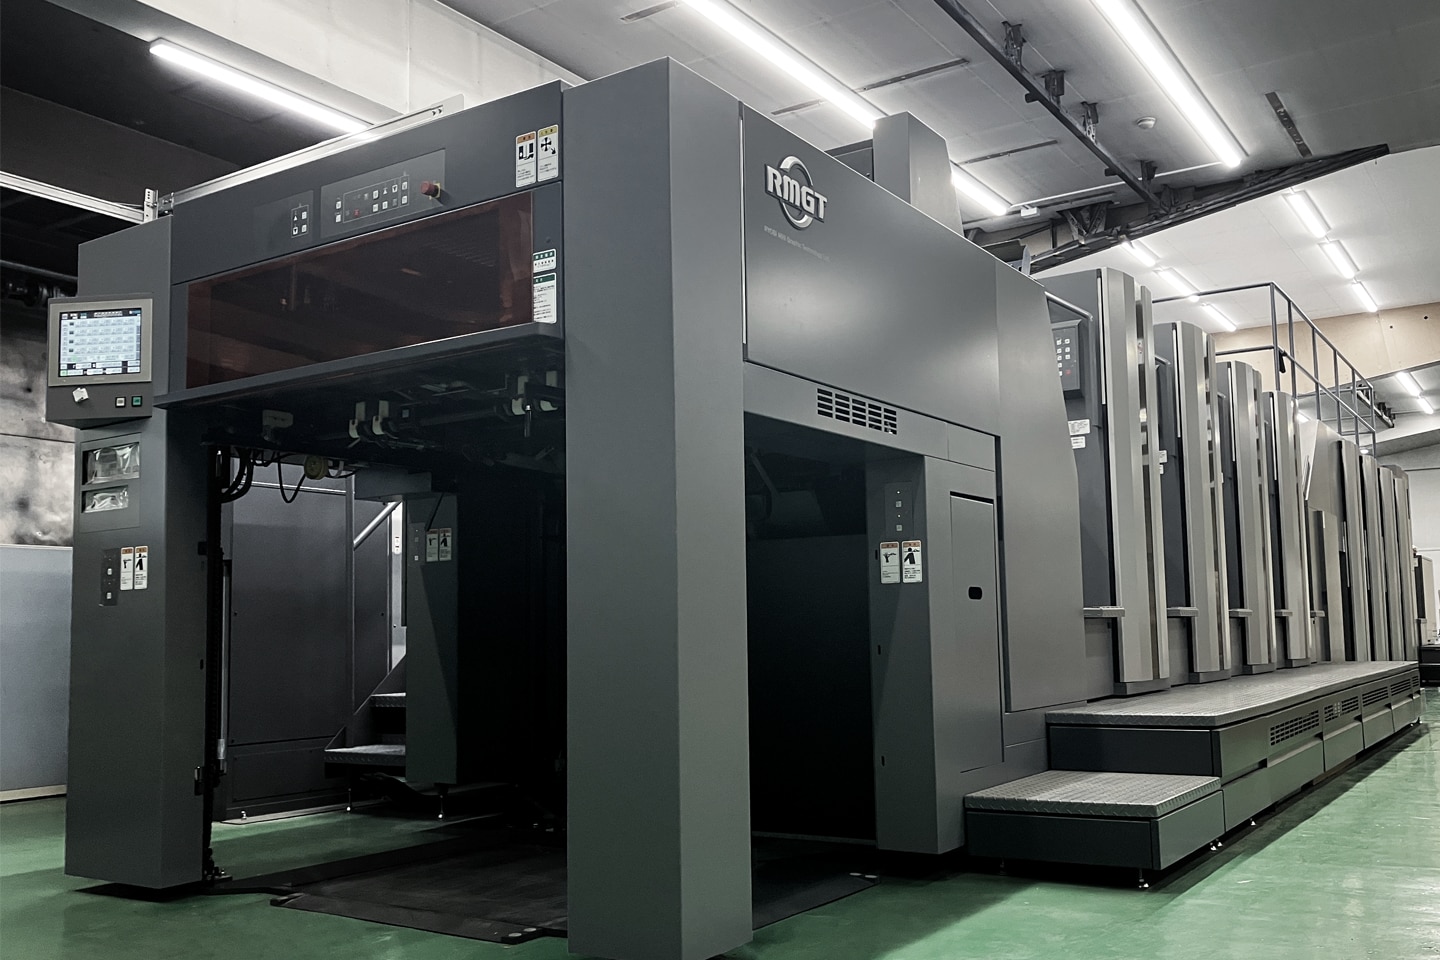 山藤三陽印刷の世界初の環境対応型印刷機で環境保全活動への取り組みを支援